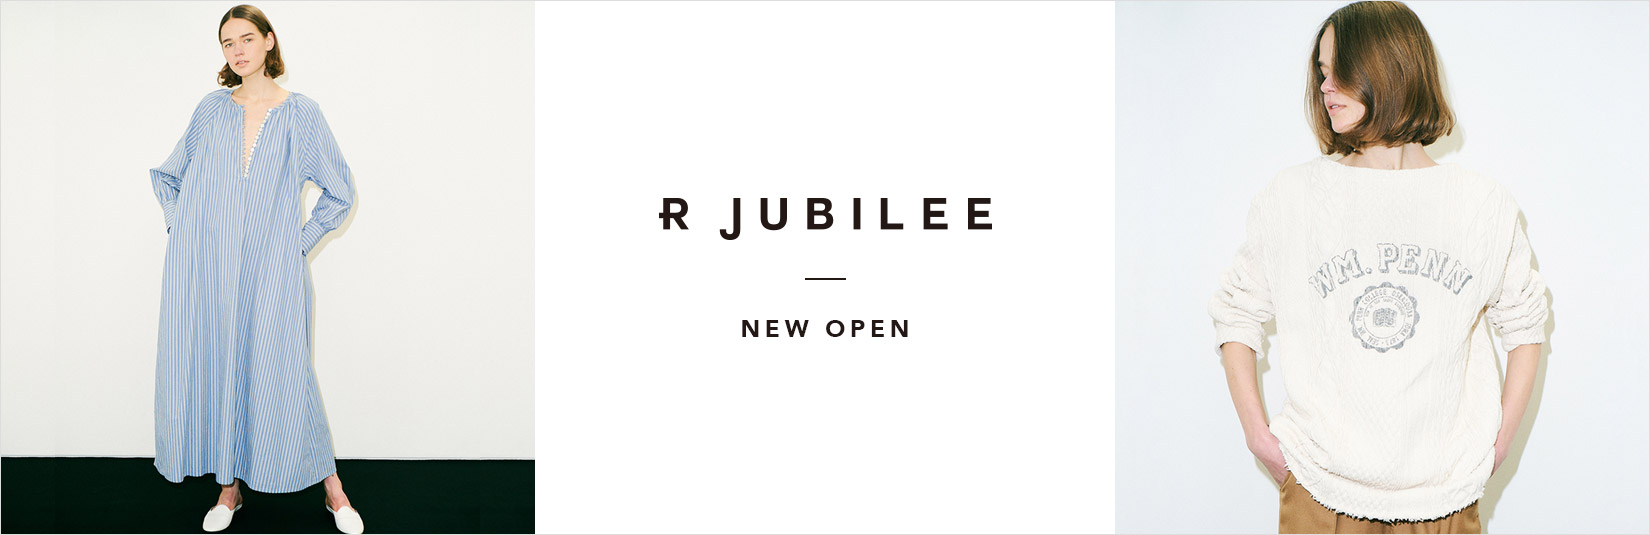 R JUBILEE -New Open-